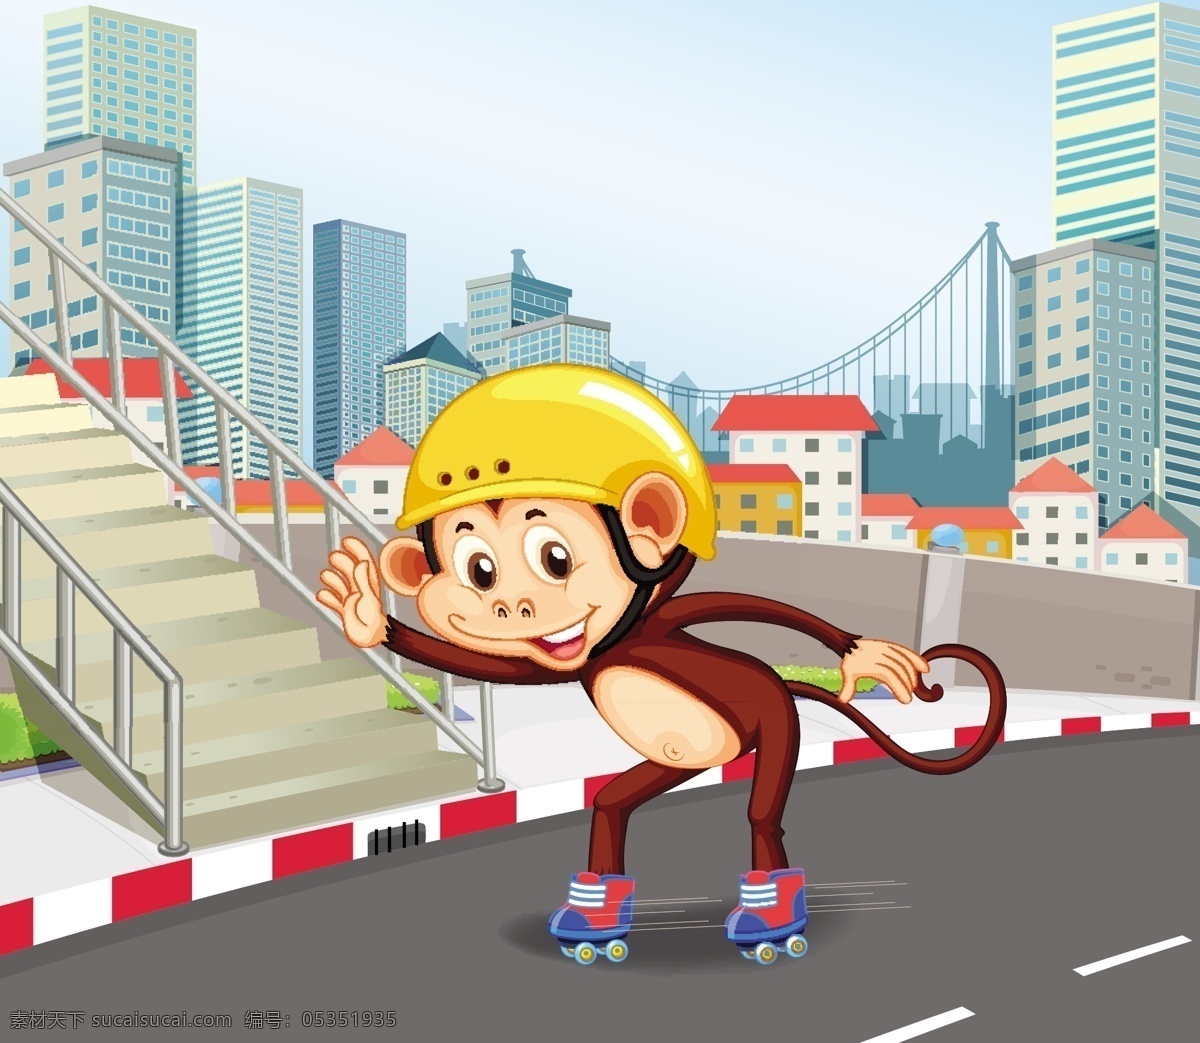 卡通动物插画 动物 户外 运动 健身 锻炼 滑板 旱冰 休闲 玩 快乐 插画 漫画 野生动物 动物素材 可爱 卡通动物生物 卡通设计